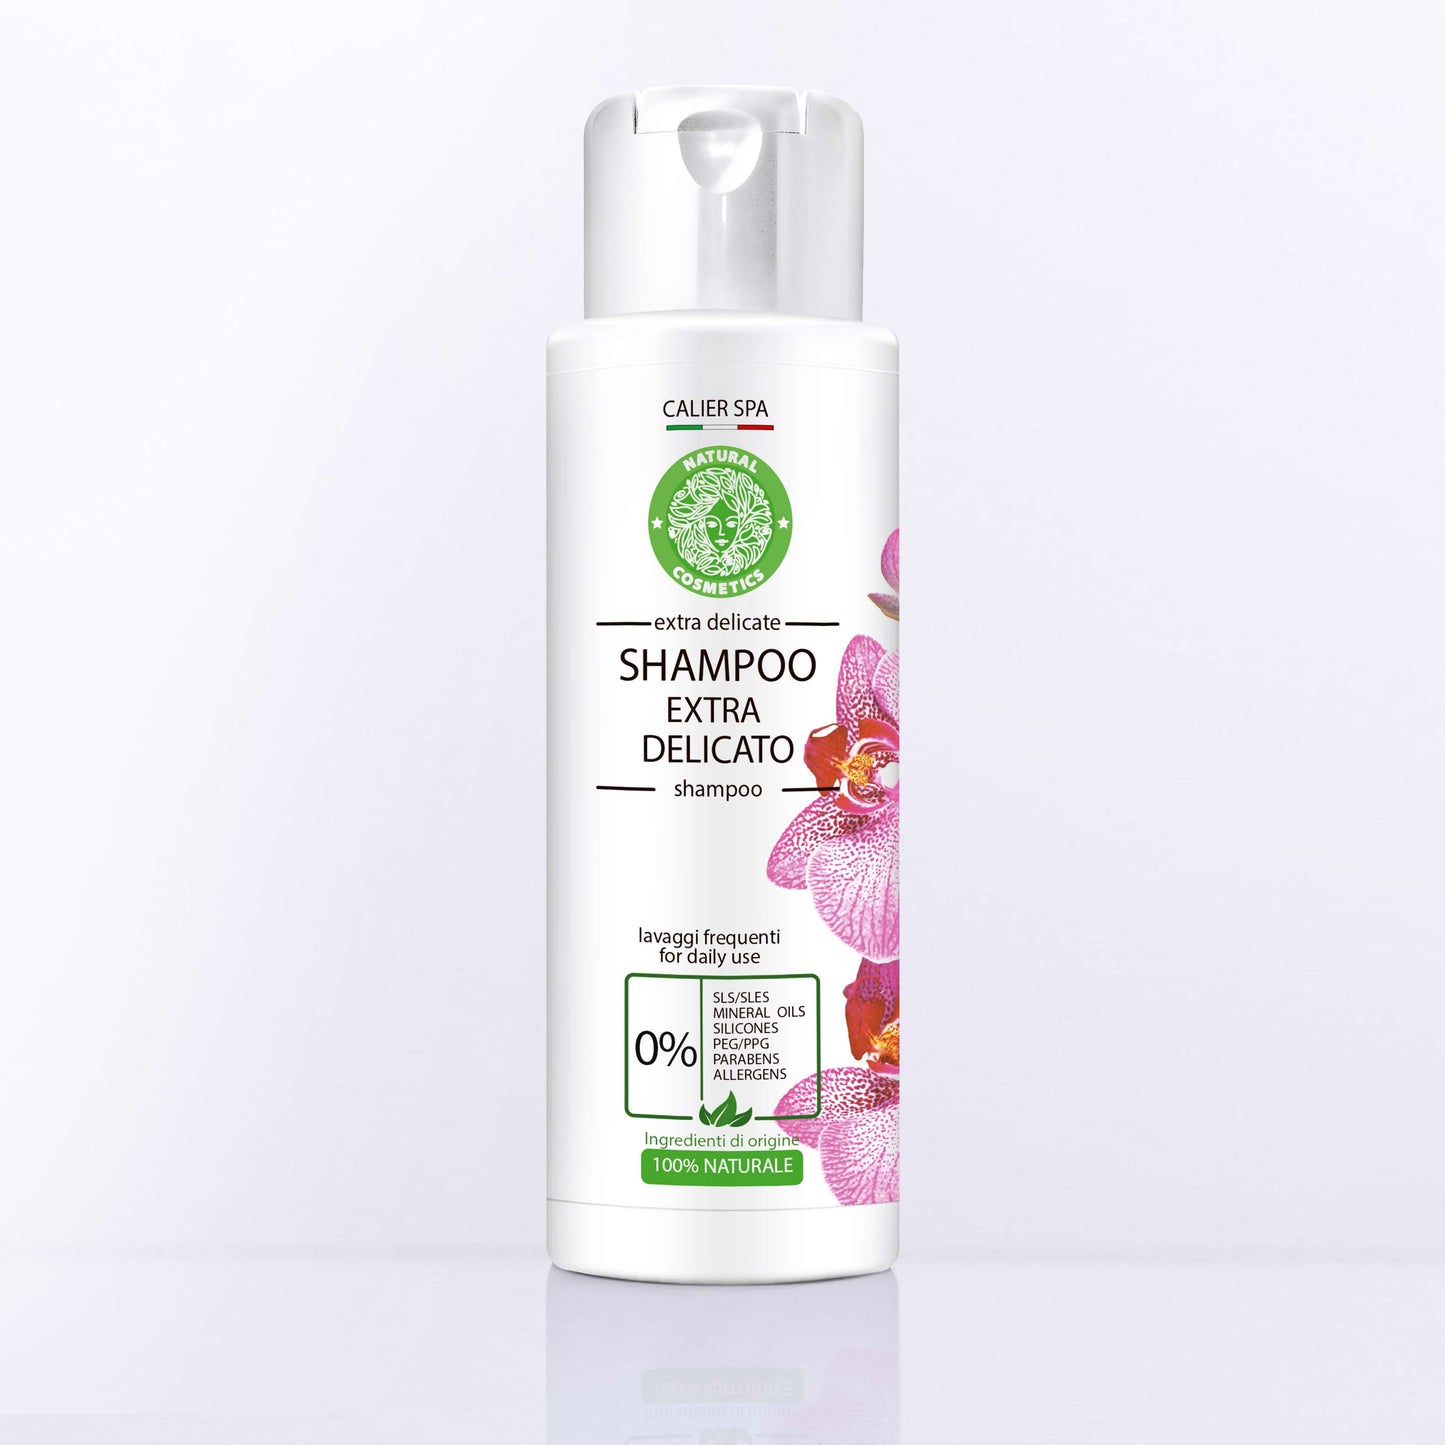 Shampoo extradelicato OUTLET - Calier SPA